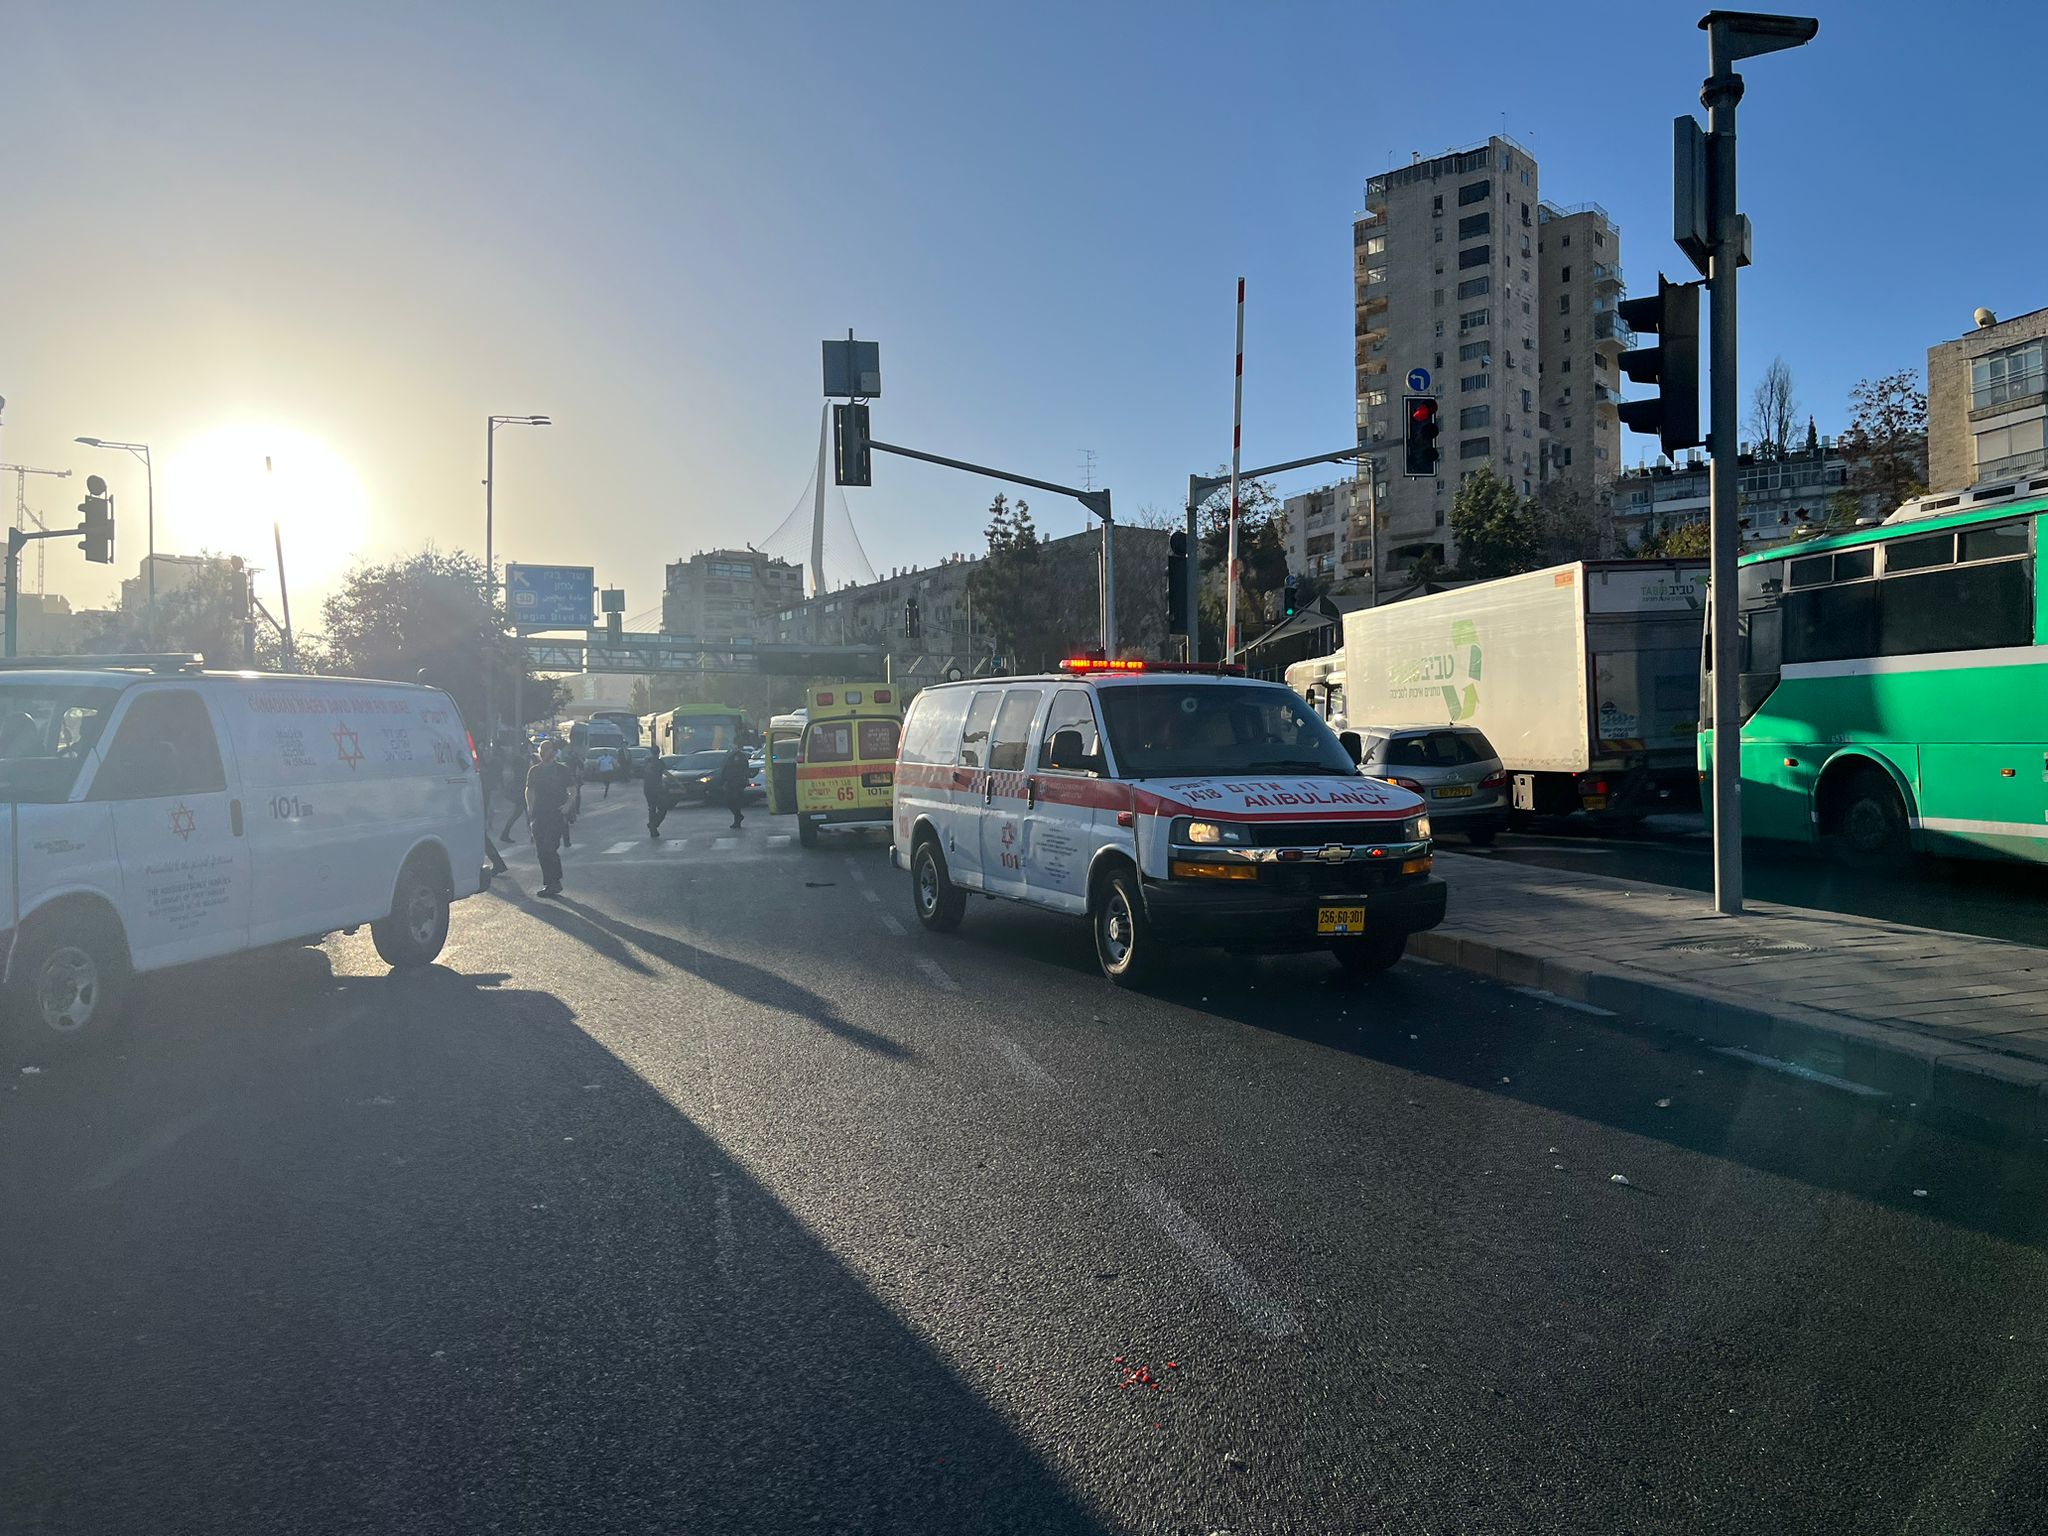 דיווח ראשוני: נרצח בפיגוע בתחנת אוטובוס ביציאה מירושלים, באירוע פצועים ביניהם אנוש